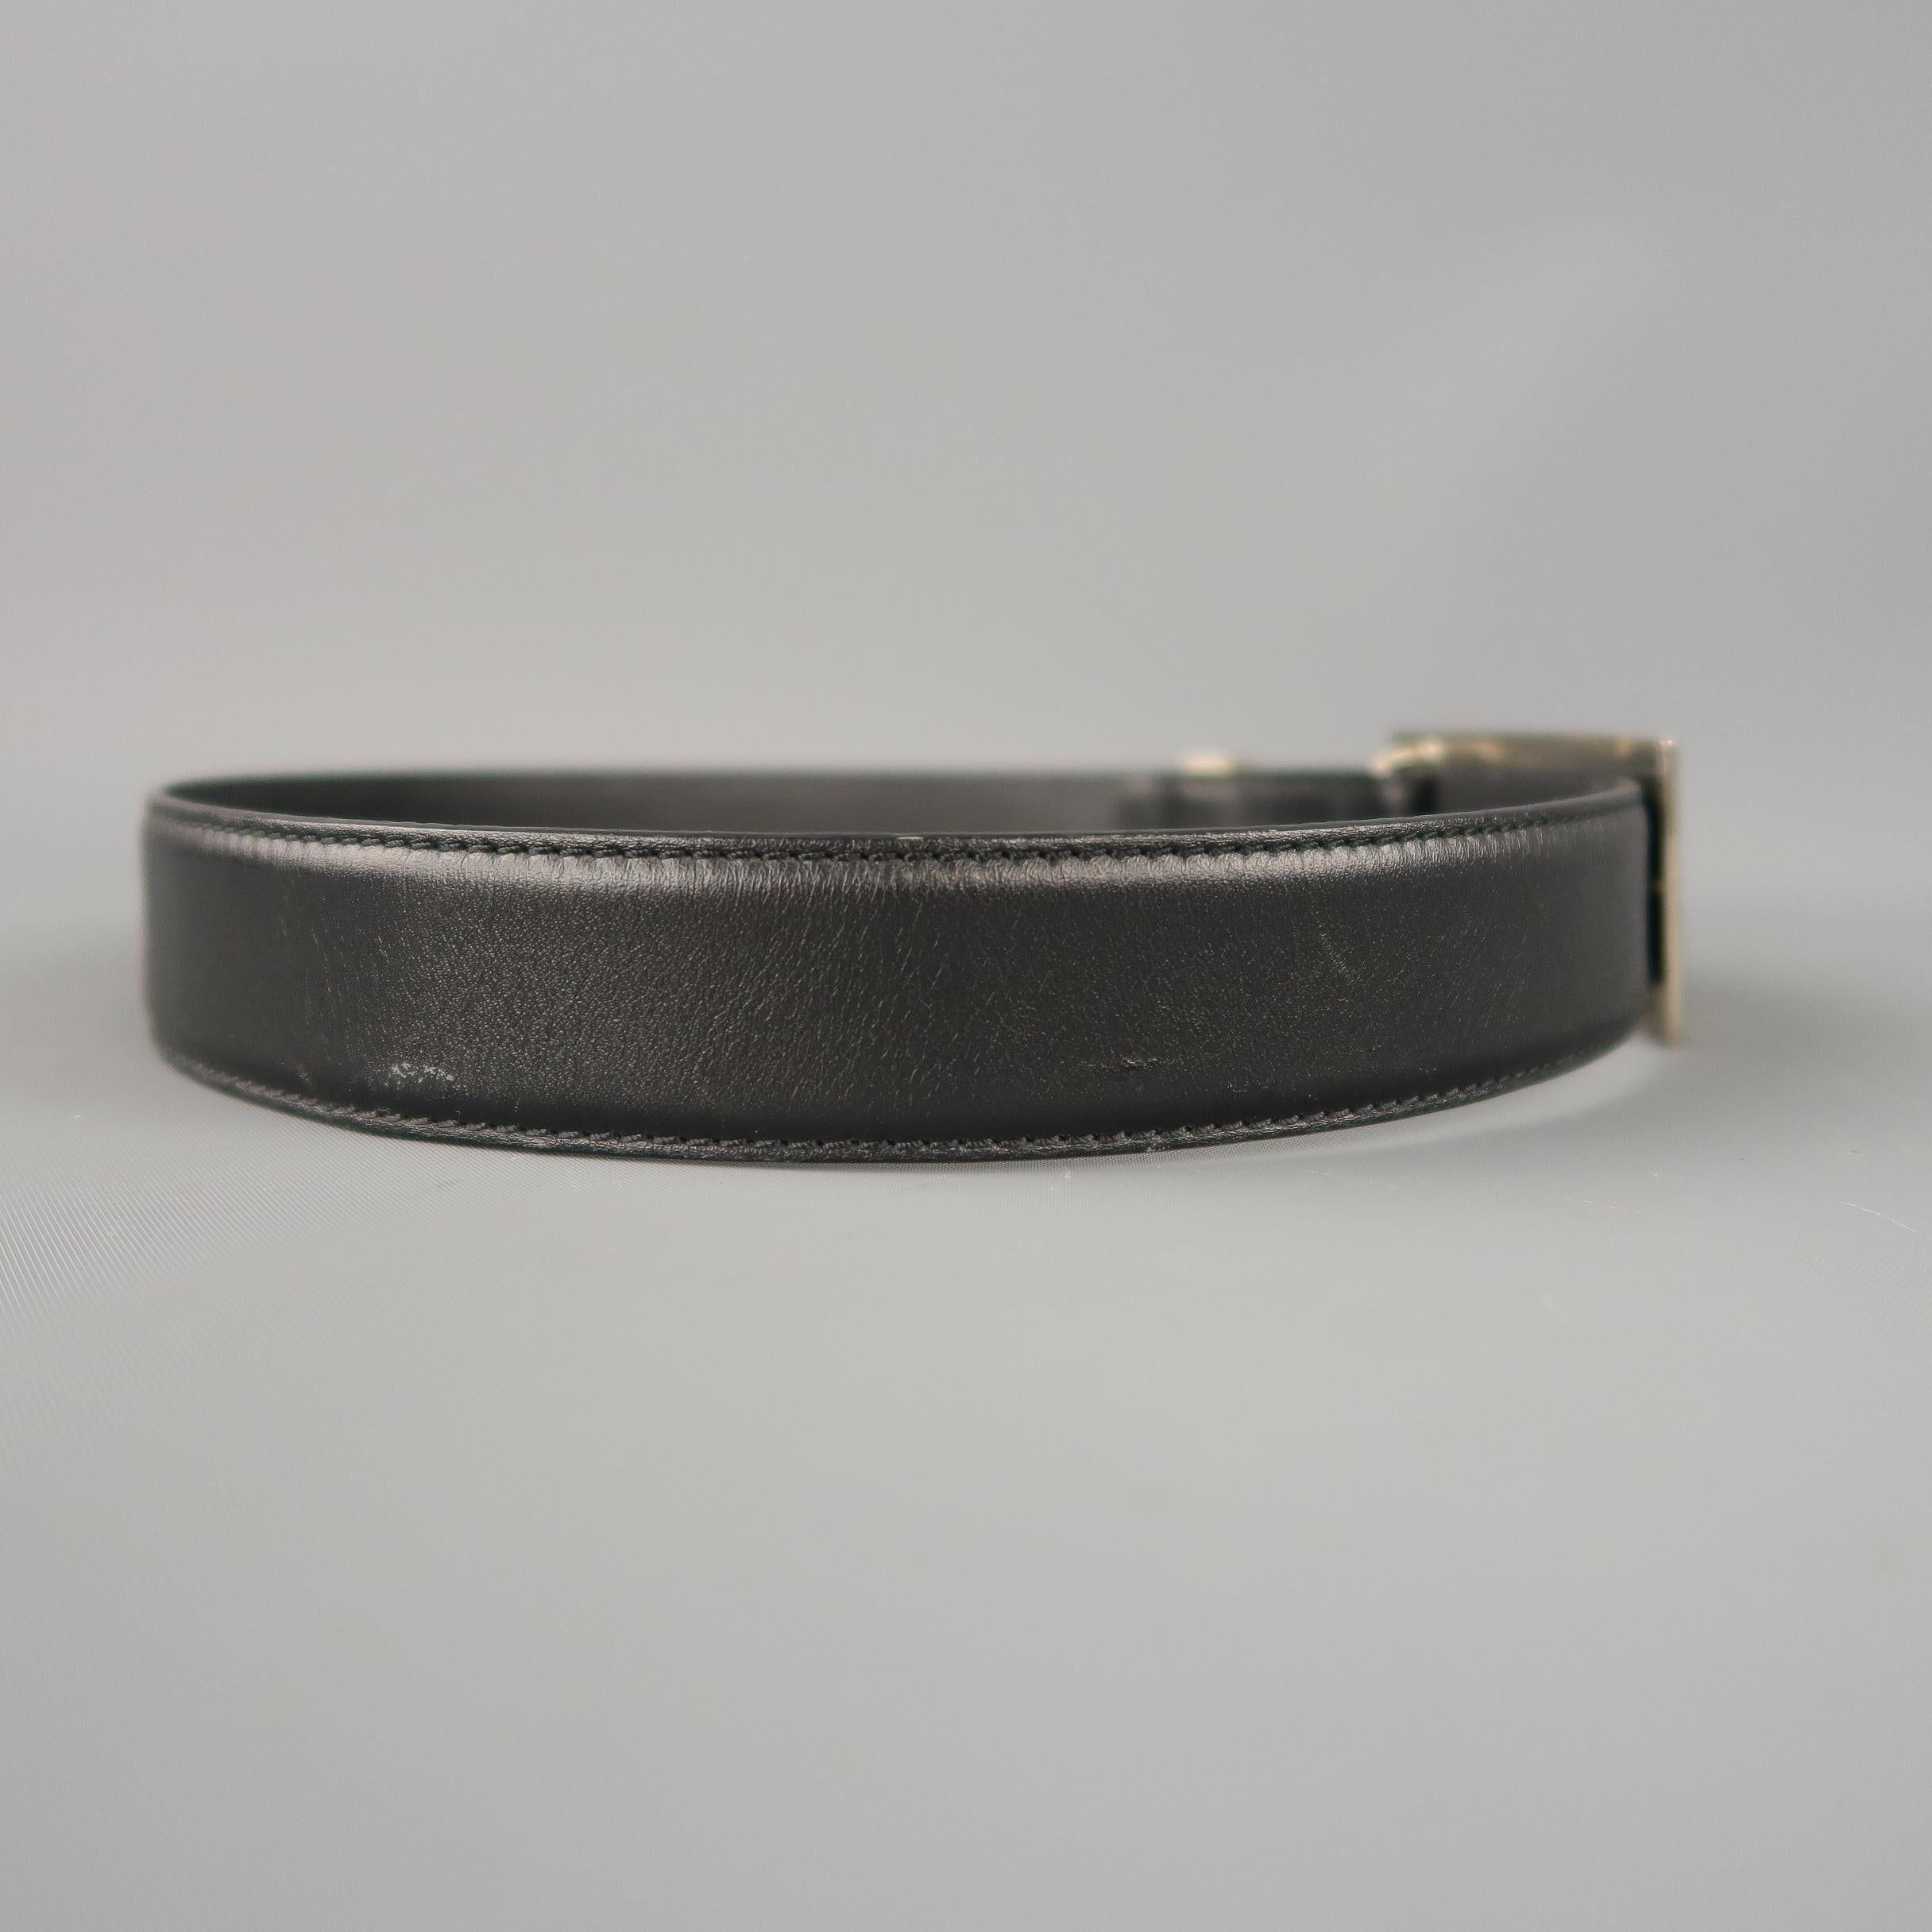 GIANNI VERSACE Size 28 Rhinestone Union Jack Black Leather Belt 2